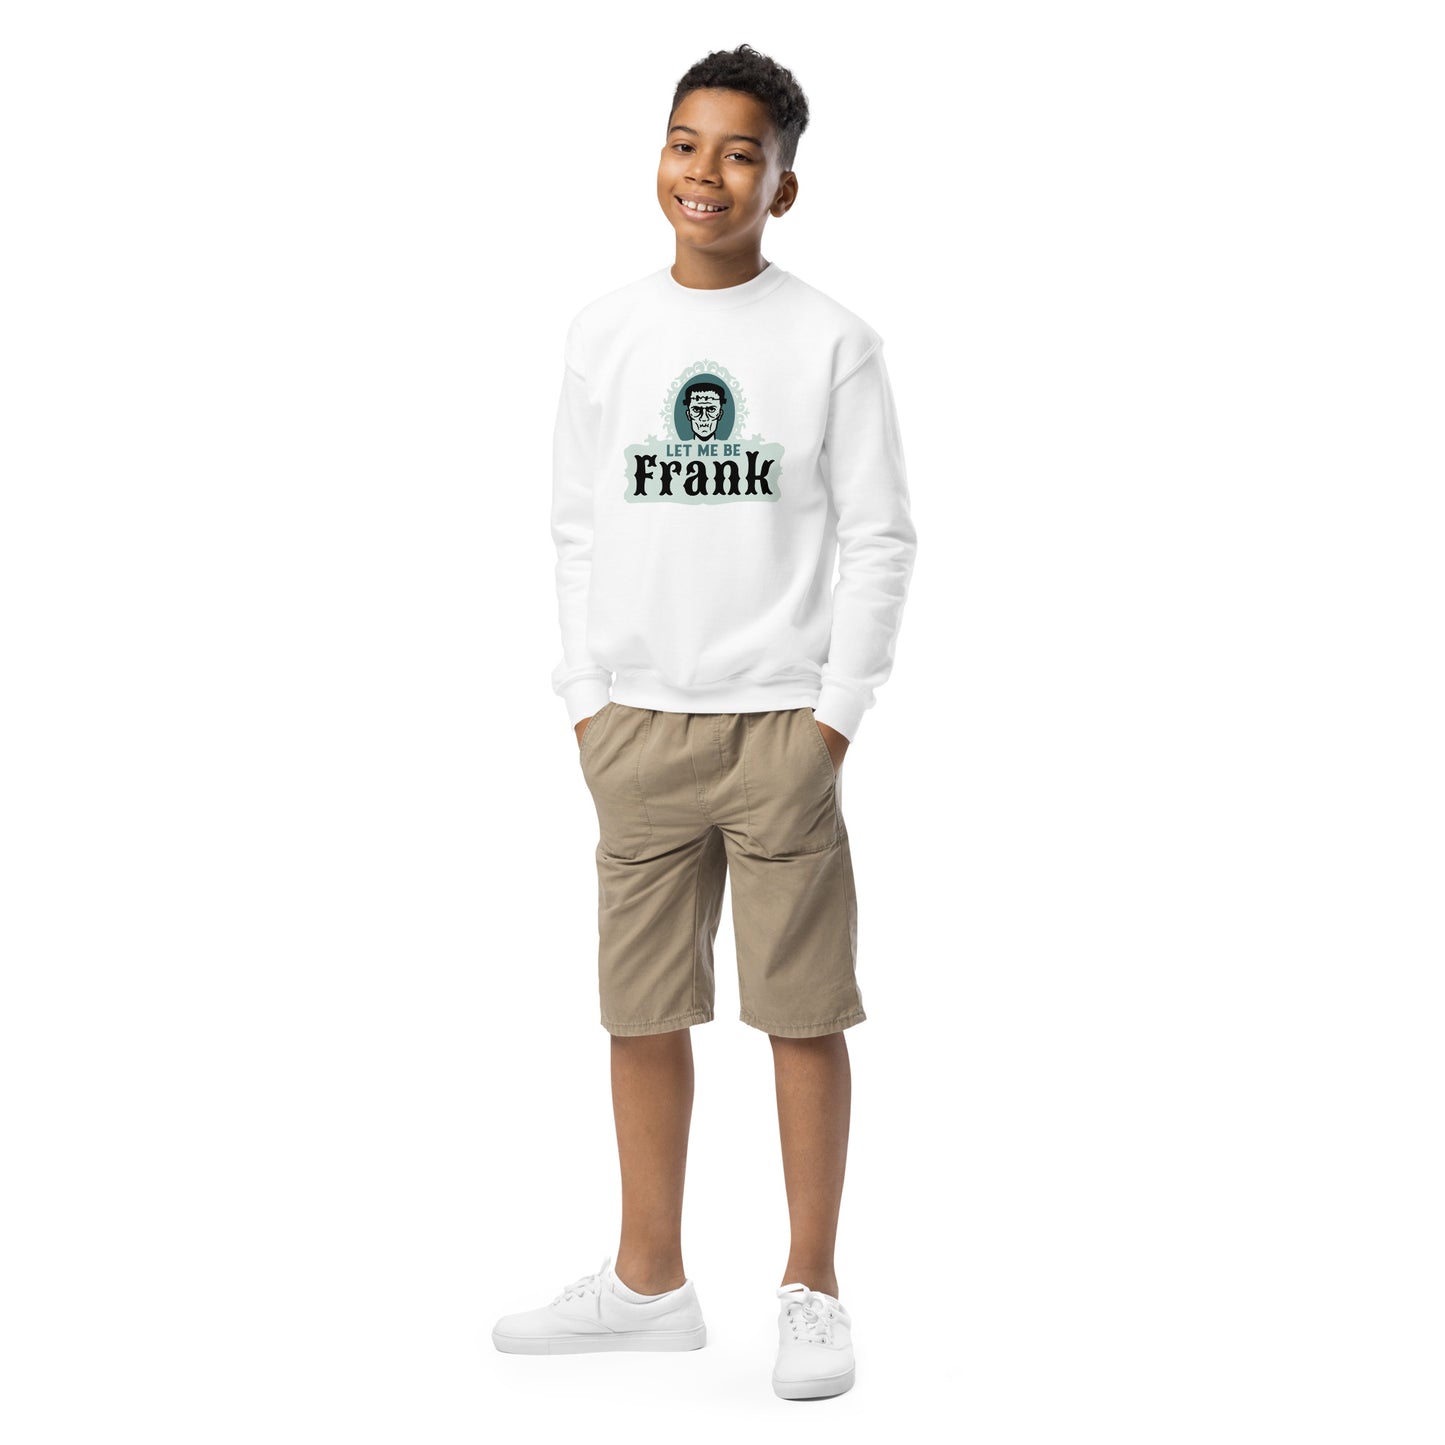 "Frank" children's hooded sweatshirt